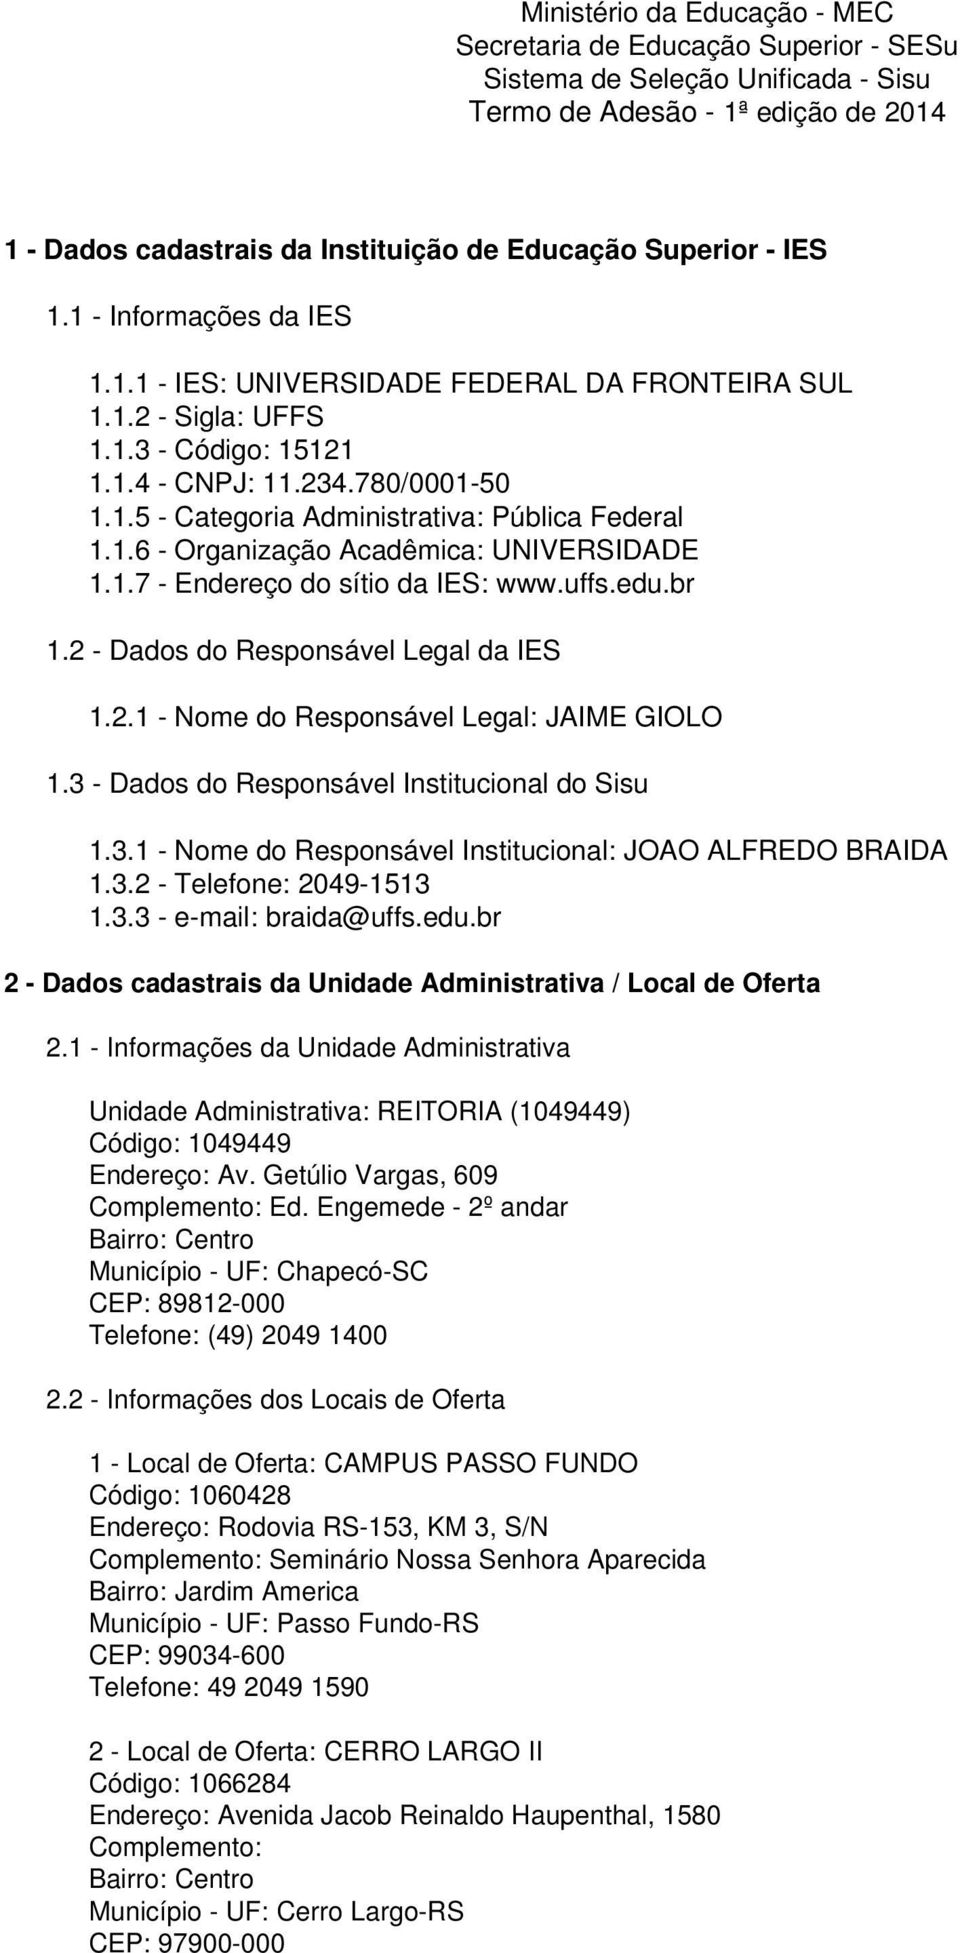 1.6 - Organização Acadêmica: UNIVERSIDADE 1.1.7 - Endereço do sítio da IES: www.uffs.edu.br 1.2 - Dados do Responsável Legal da IES 1.2.1 - Nome do Responsável Legal: JAIME GIOLO 1.